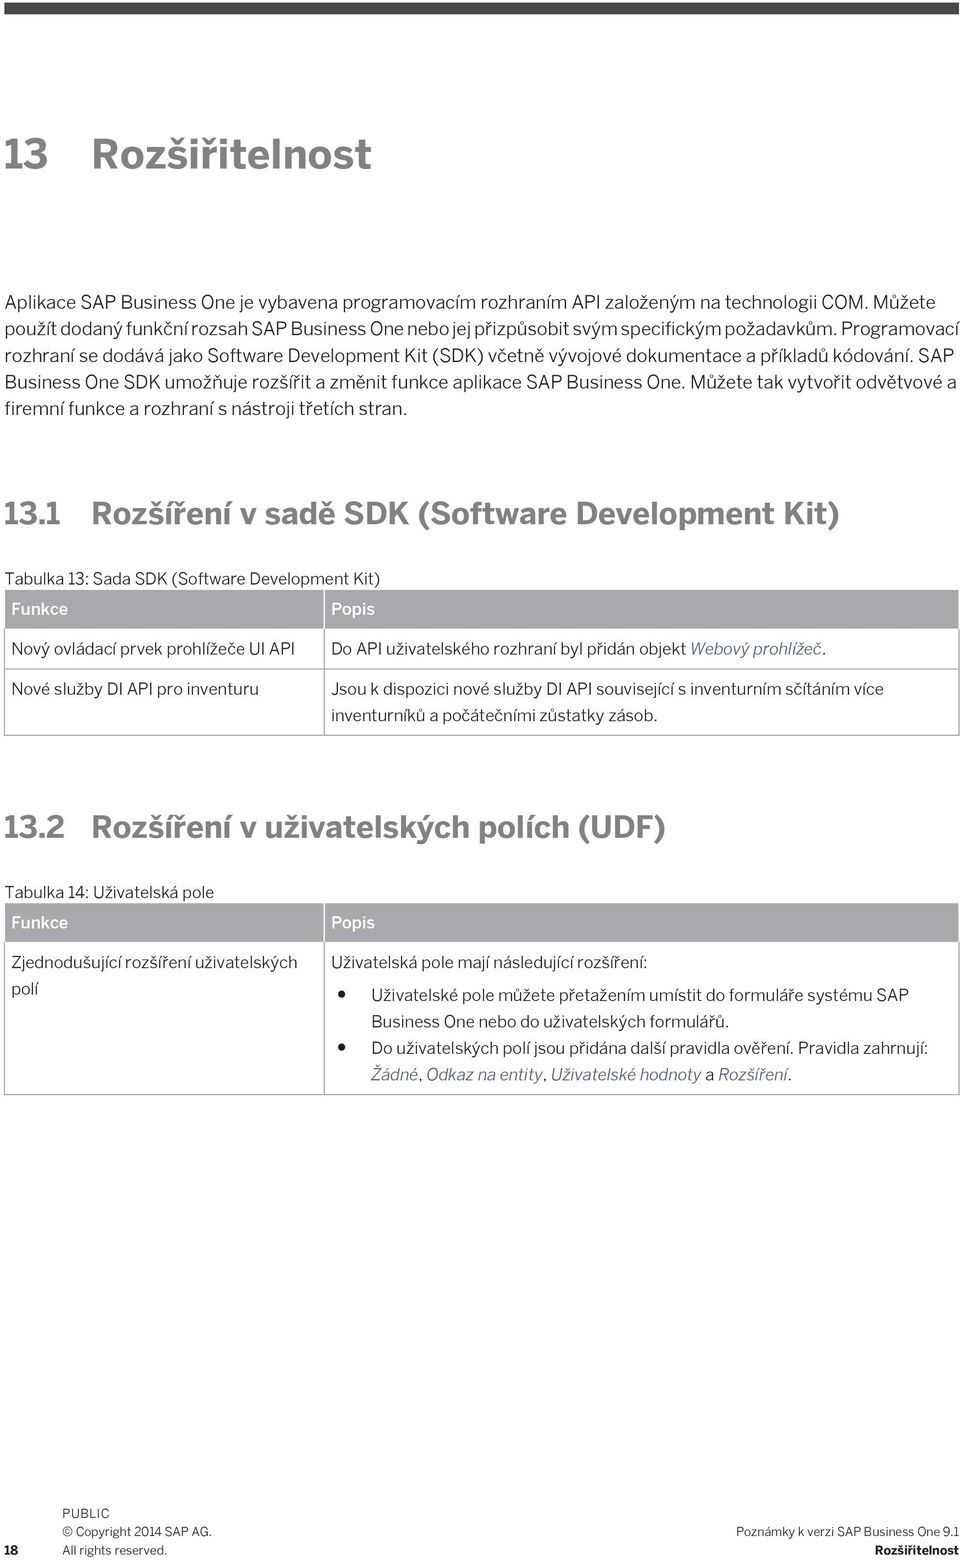 Programovací rozhraní se dodává jako Software Development Kit (SDK) včetně vývojové dokumentace a příkladů kódování. SAP Business One SDK umožňuje rozšířit a změnit funkce aplikace SAP Business One.